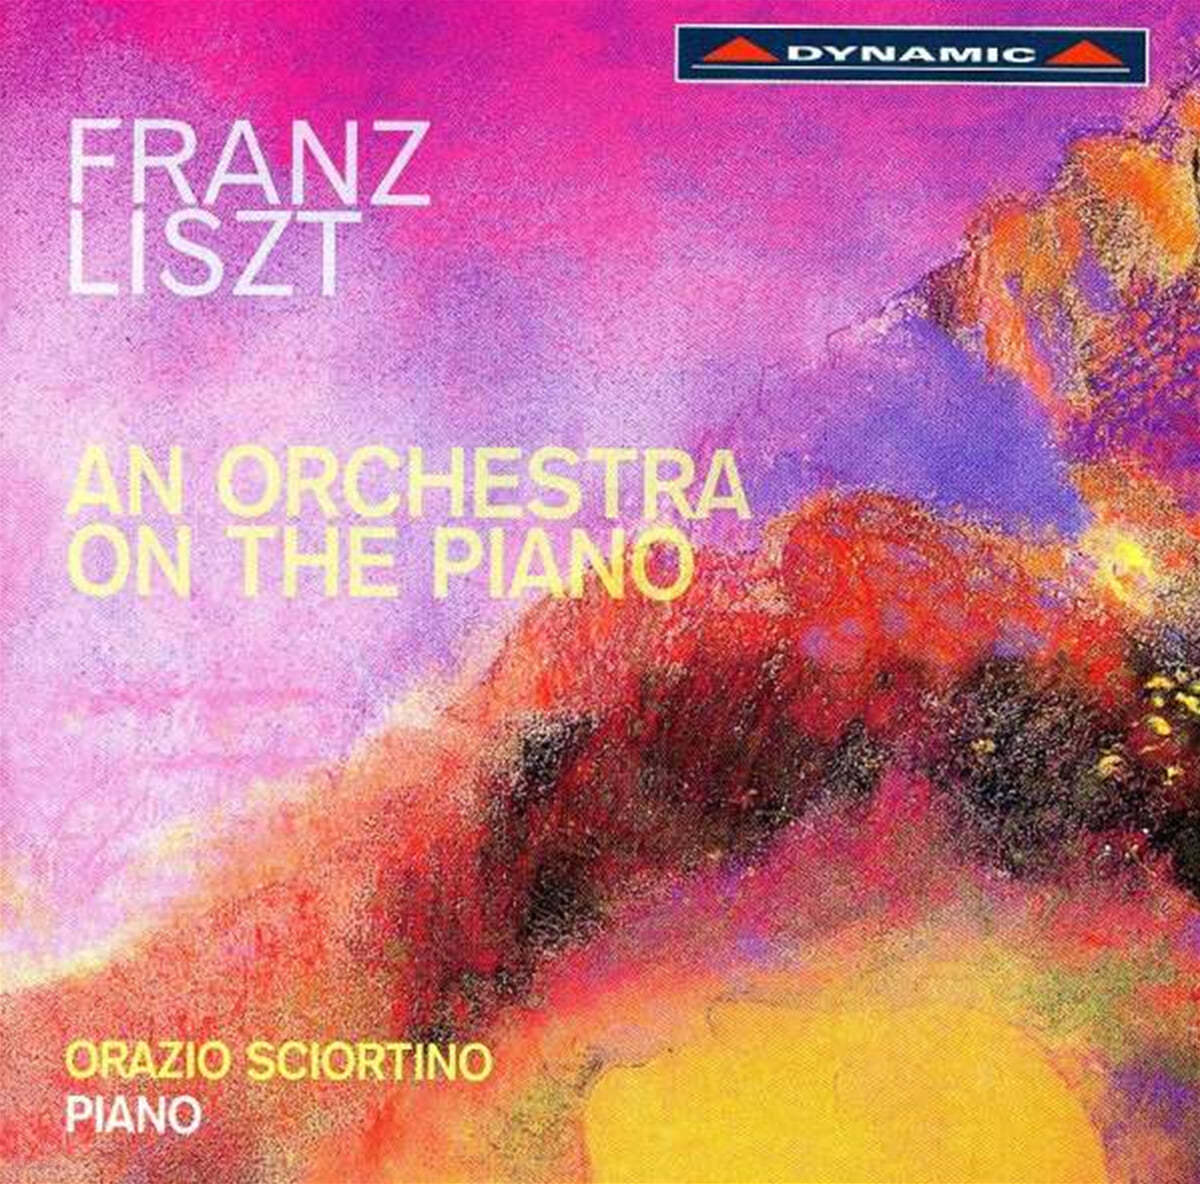 Orazio Sciortino 리스트: 교향시의 피아노 편곡 (Liszt: An Orchestra on The Piano) 